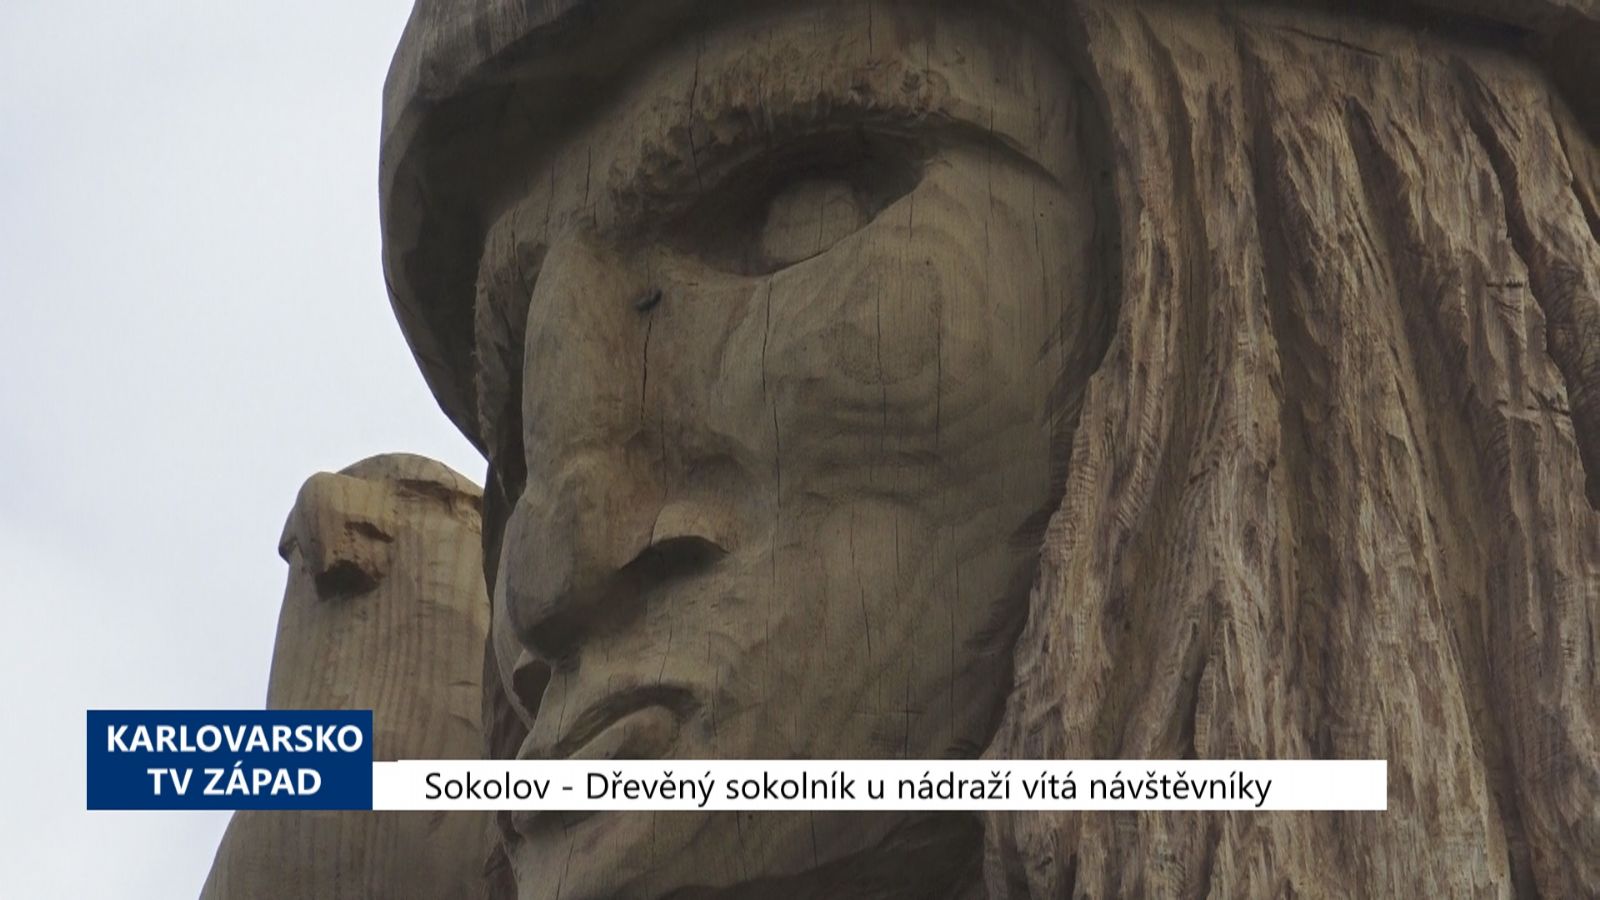 Sokolov: Dřevěný sokolník u nádraží vítá návštěvníky (TV Západ)